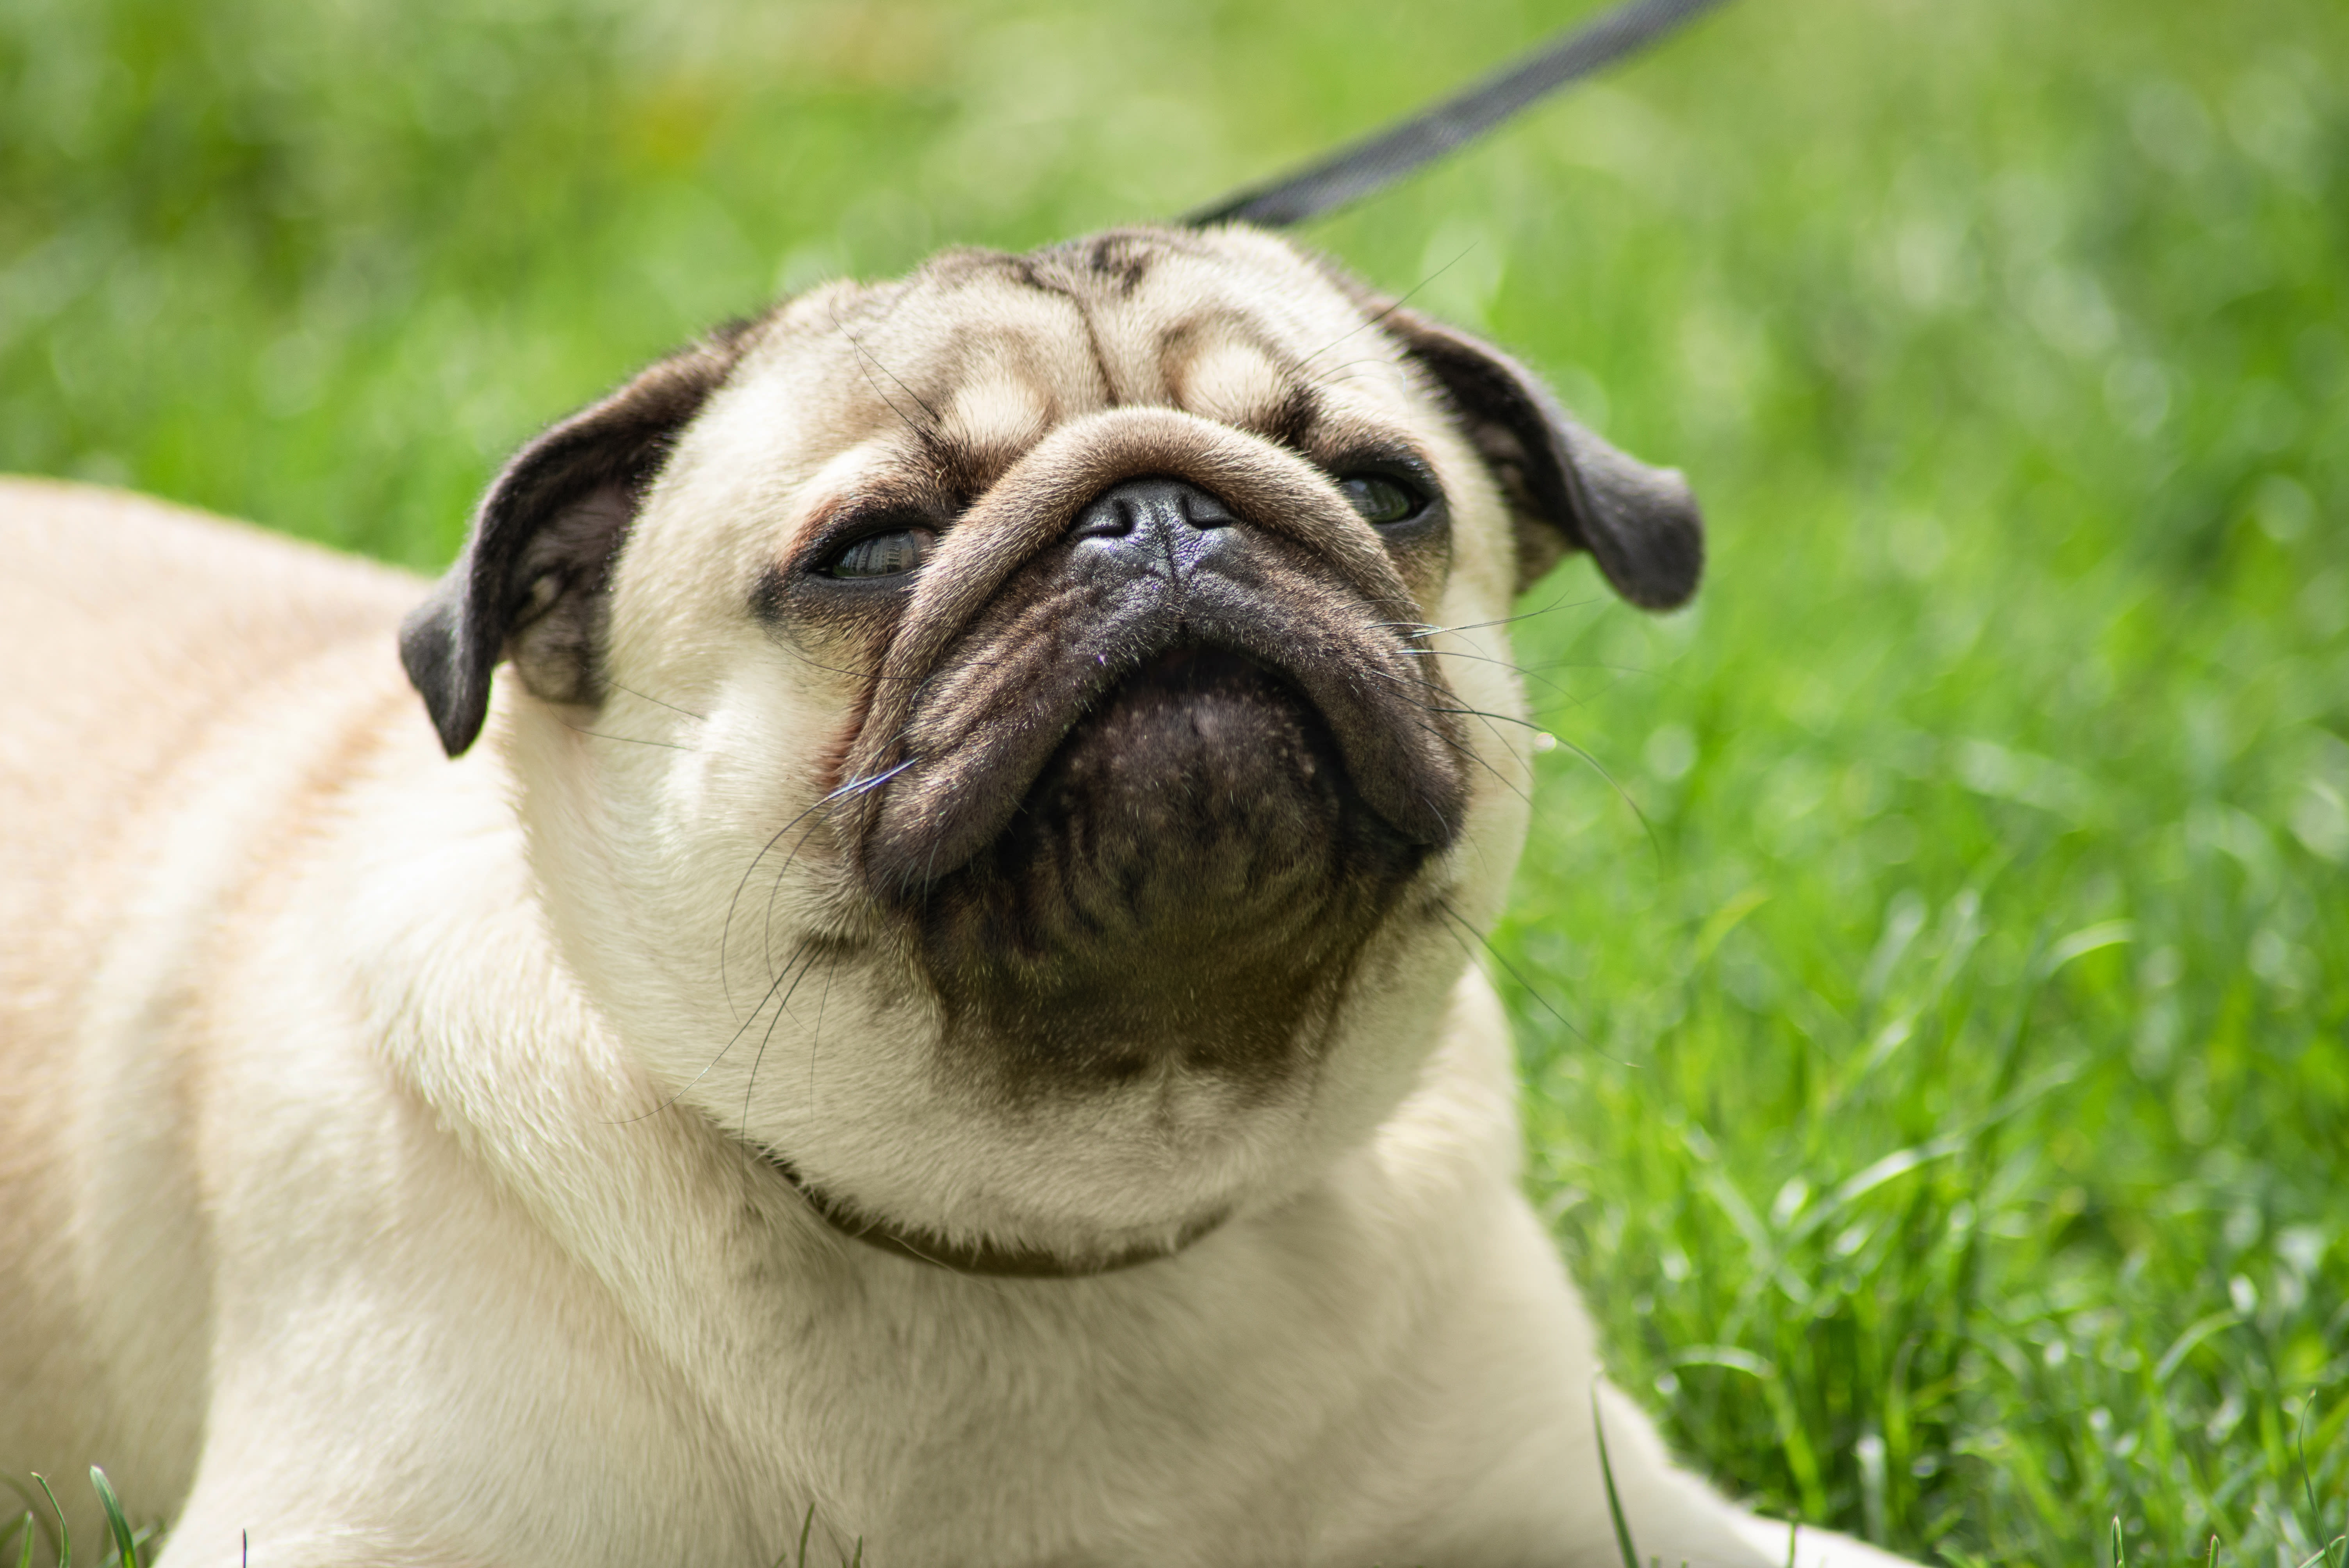 Reverse Sneeze in Dogs